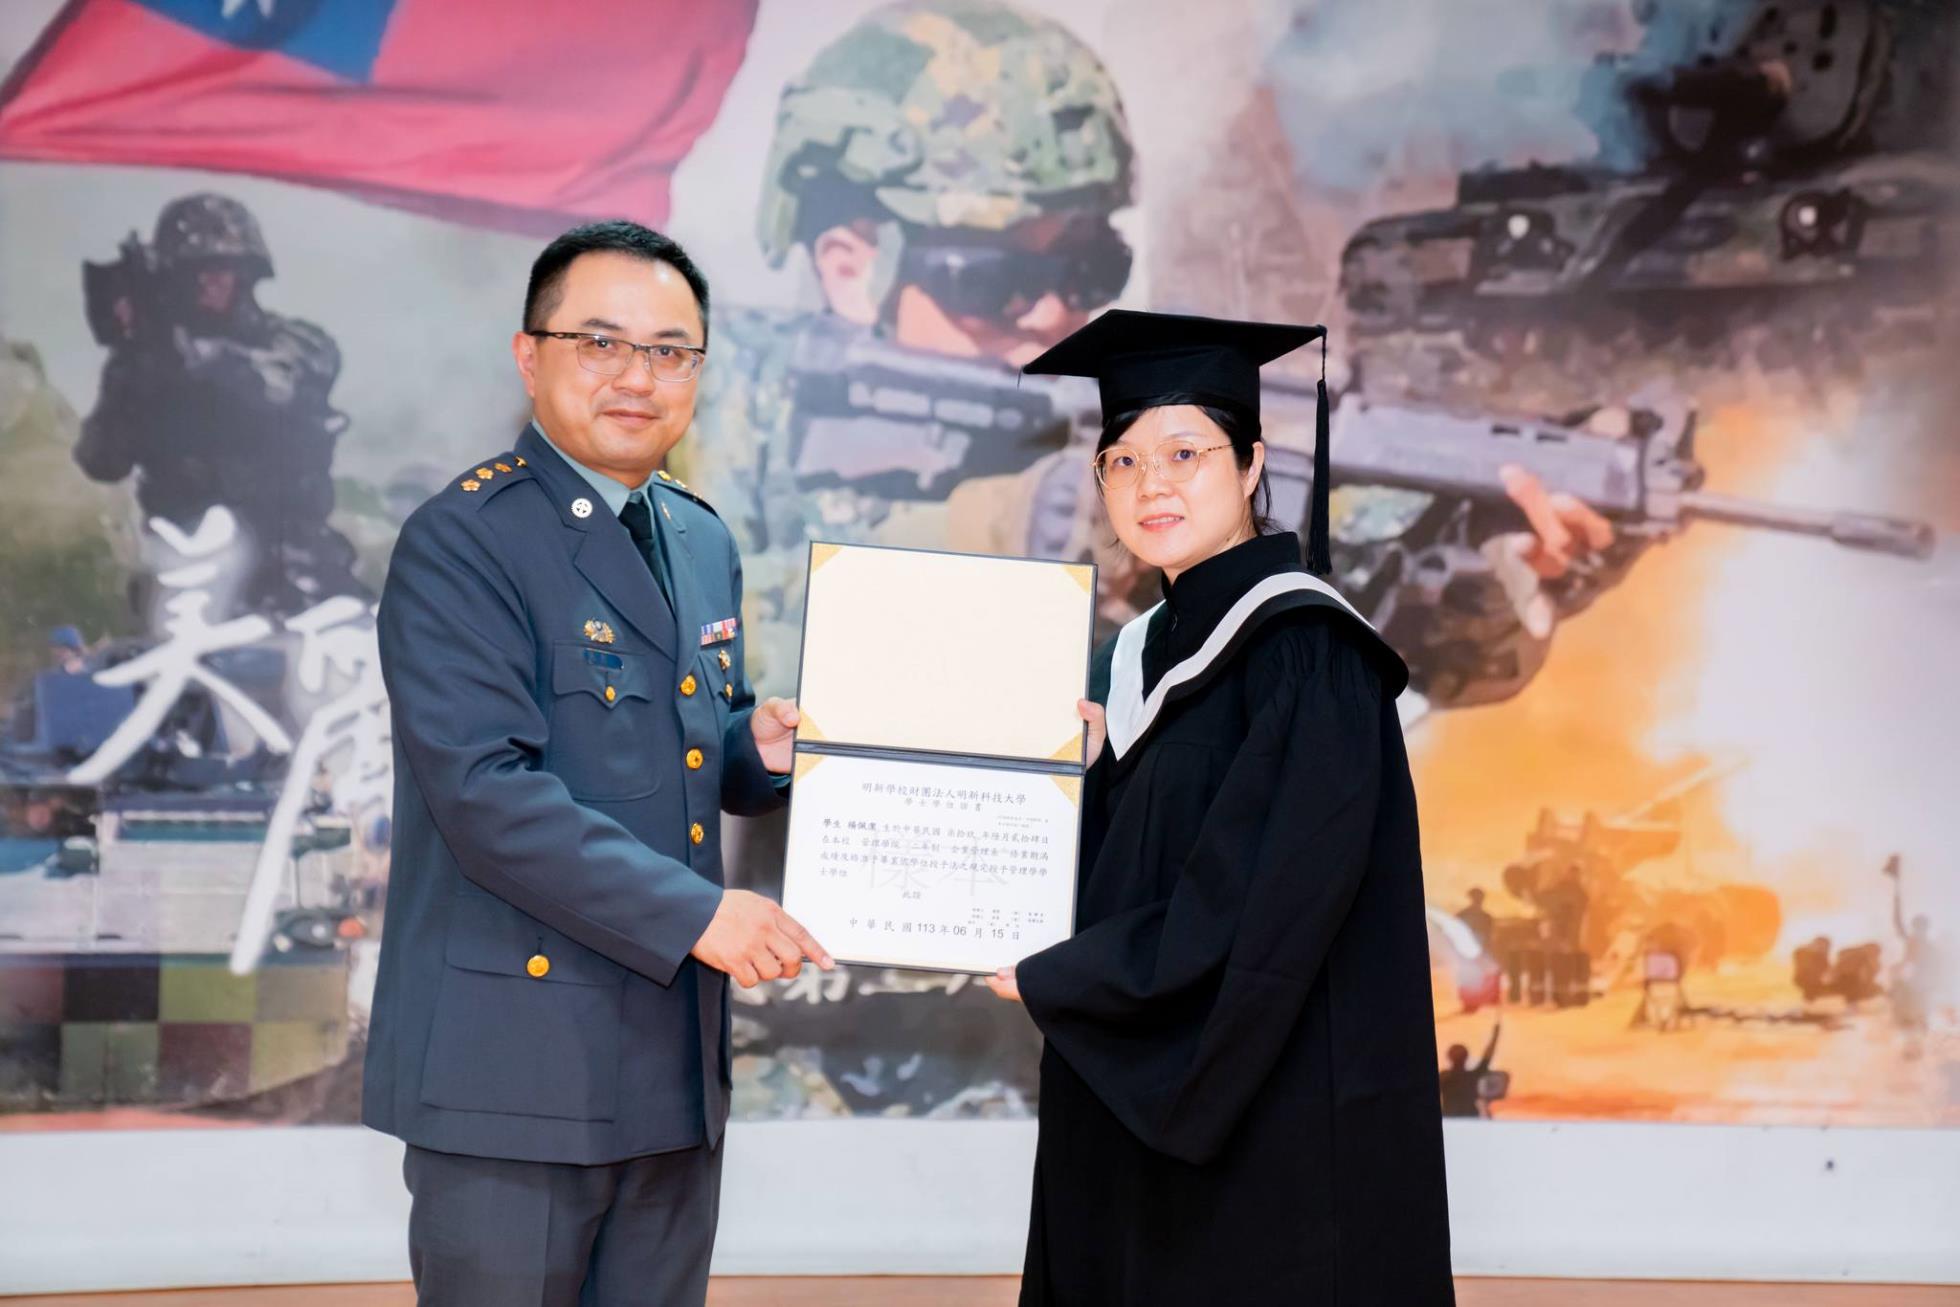 027陸軍269旅副旅長張上校頒發畢業證書予畢業生楊佩潔同學(技企四乙總務)